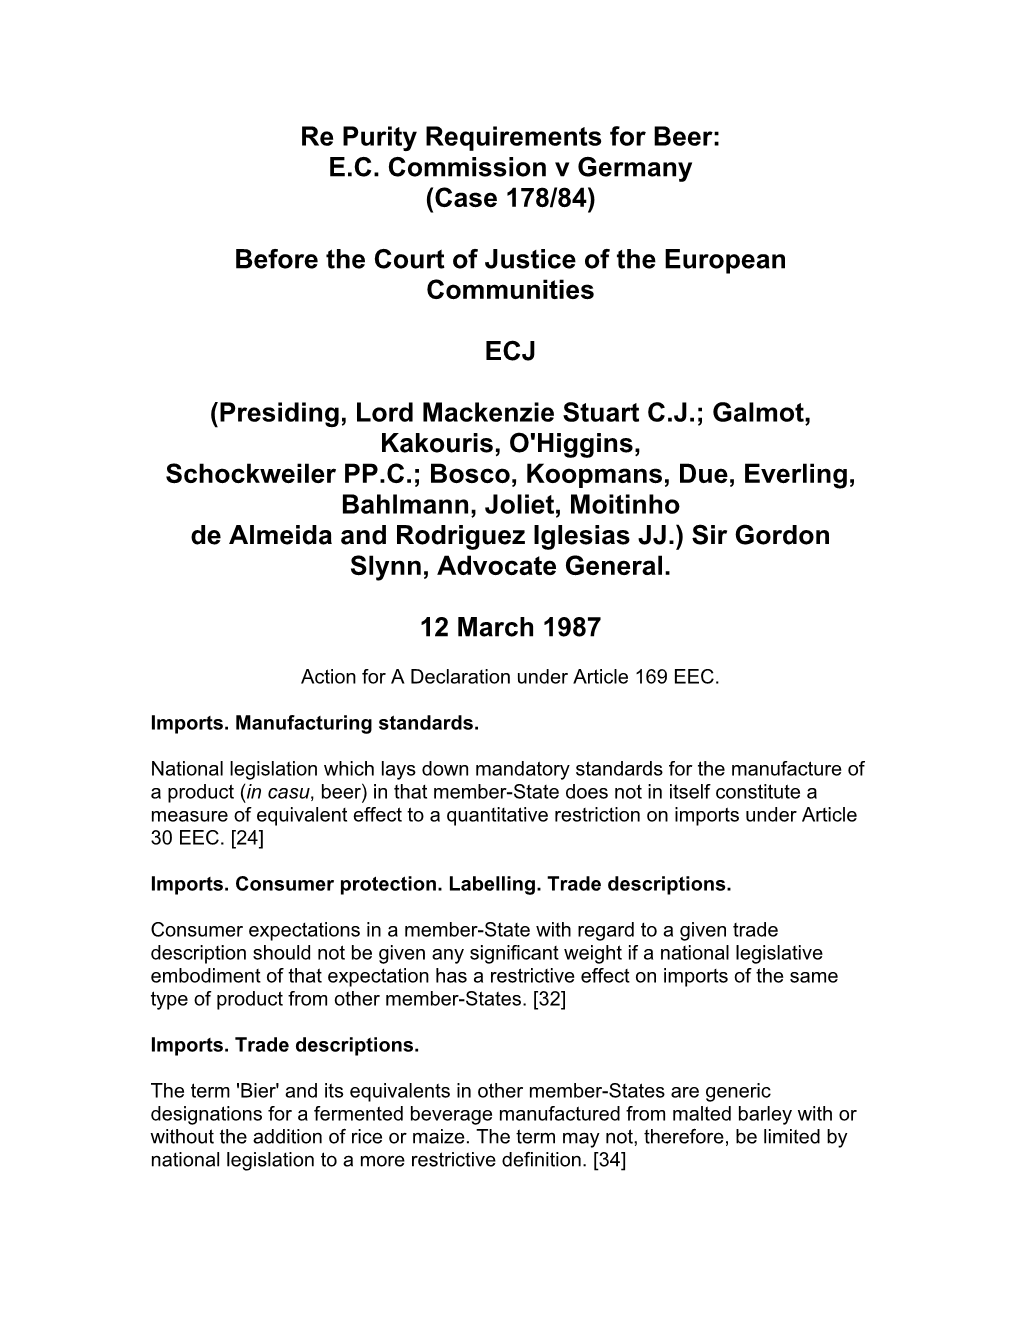 EC Commission V Germany (Case 178/84)